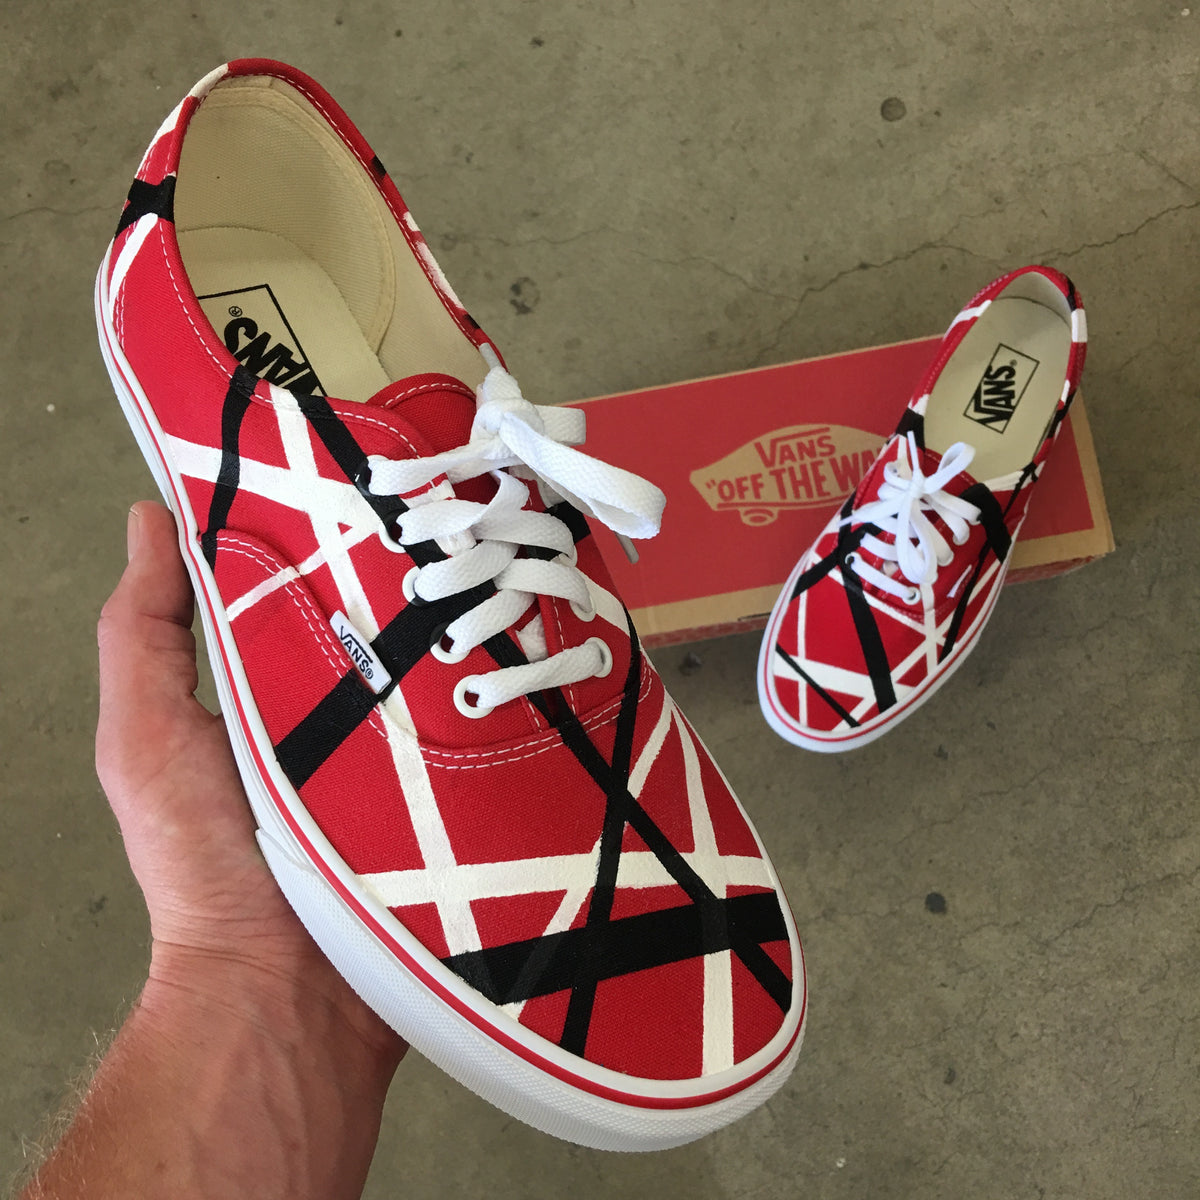 Van Halen's Iconic Frankenstrat Guitar Inspired Vans – B Street Shoes